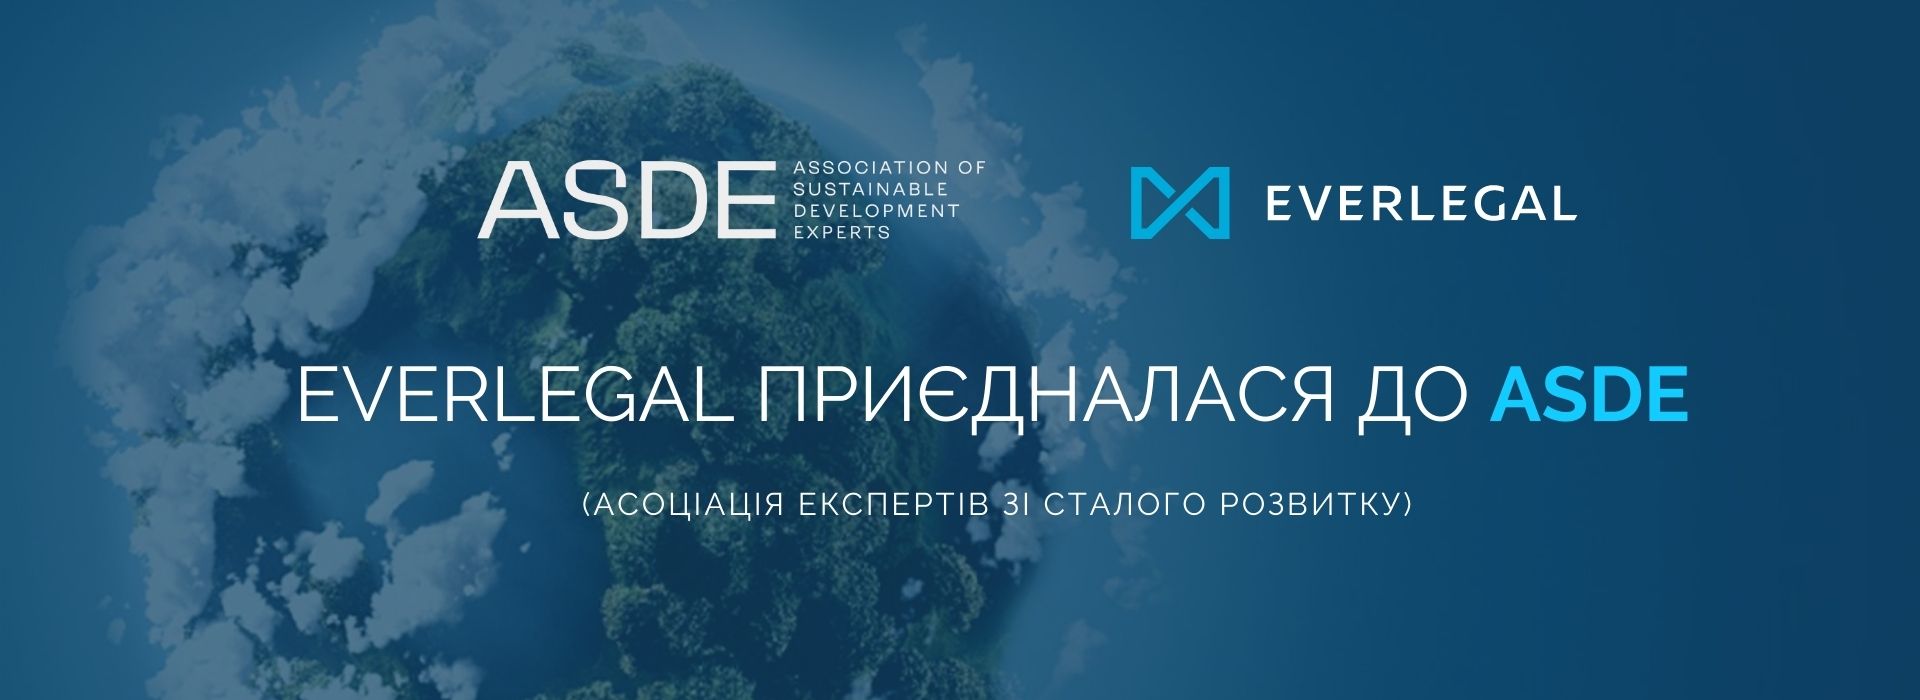 EVERLEGAL приєдналася до Асоціації експертів зі сталого розвитку (ASDE)